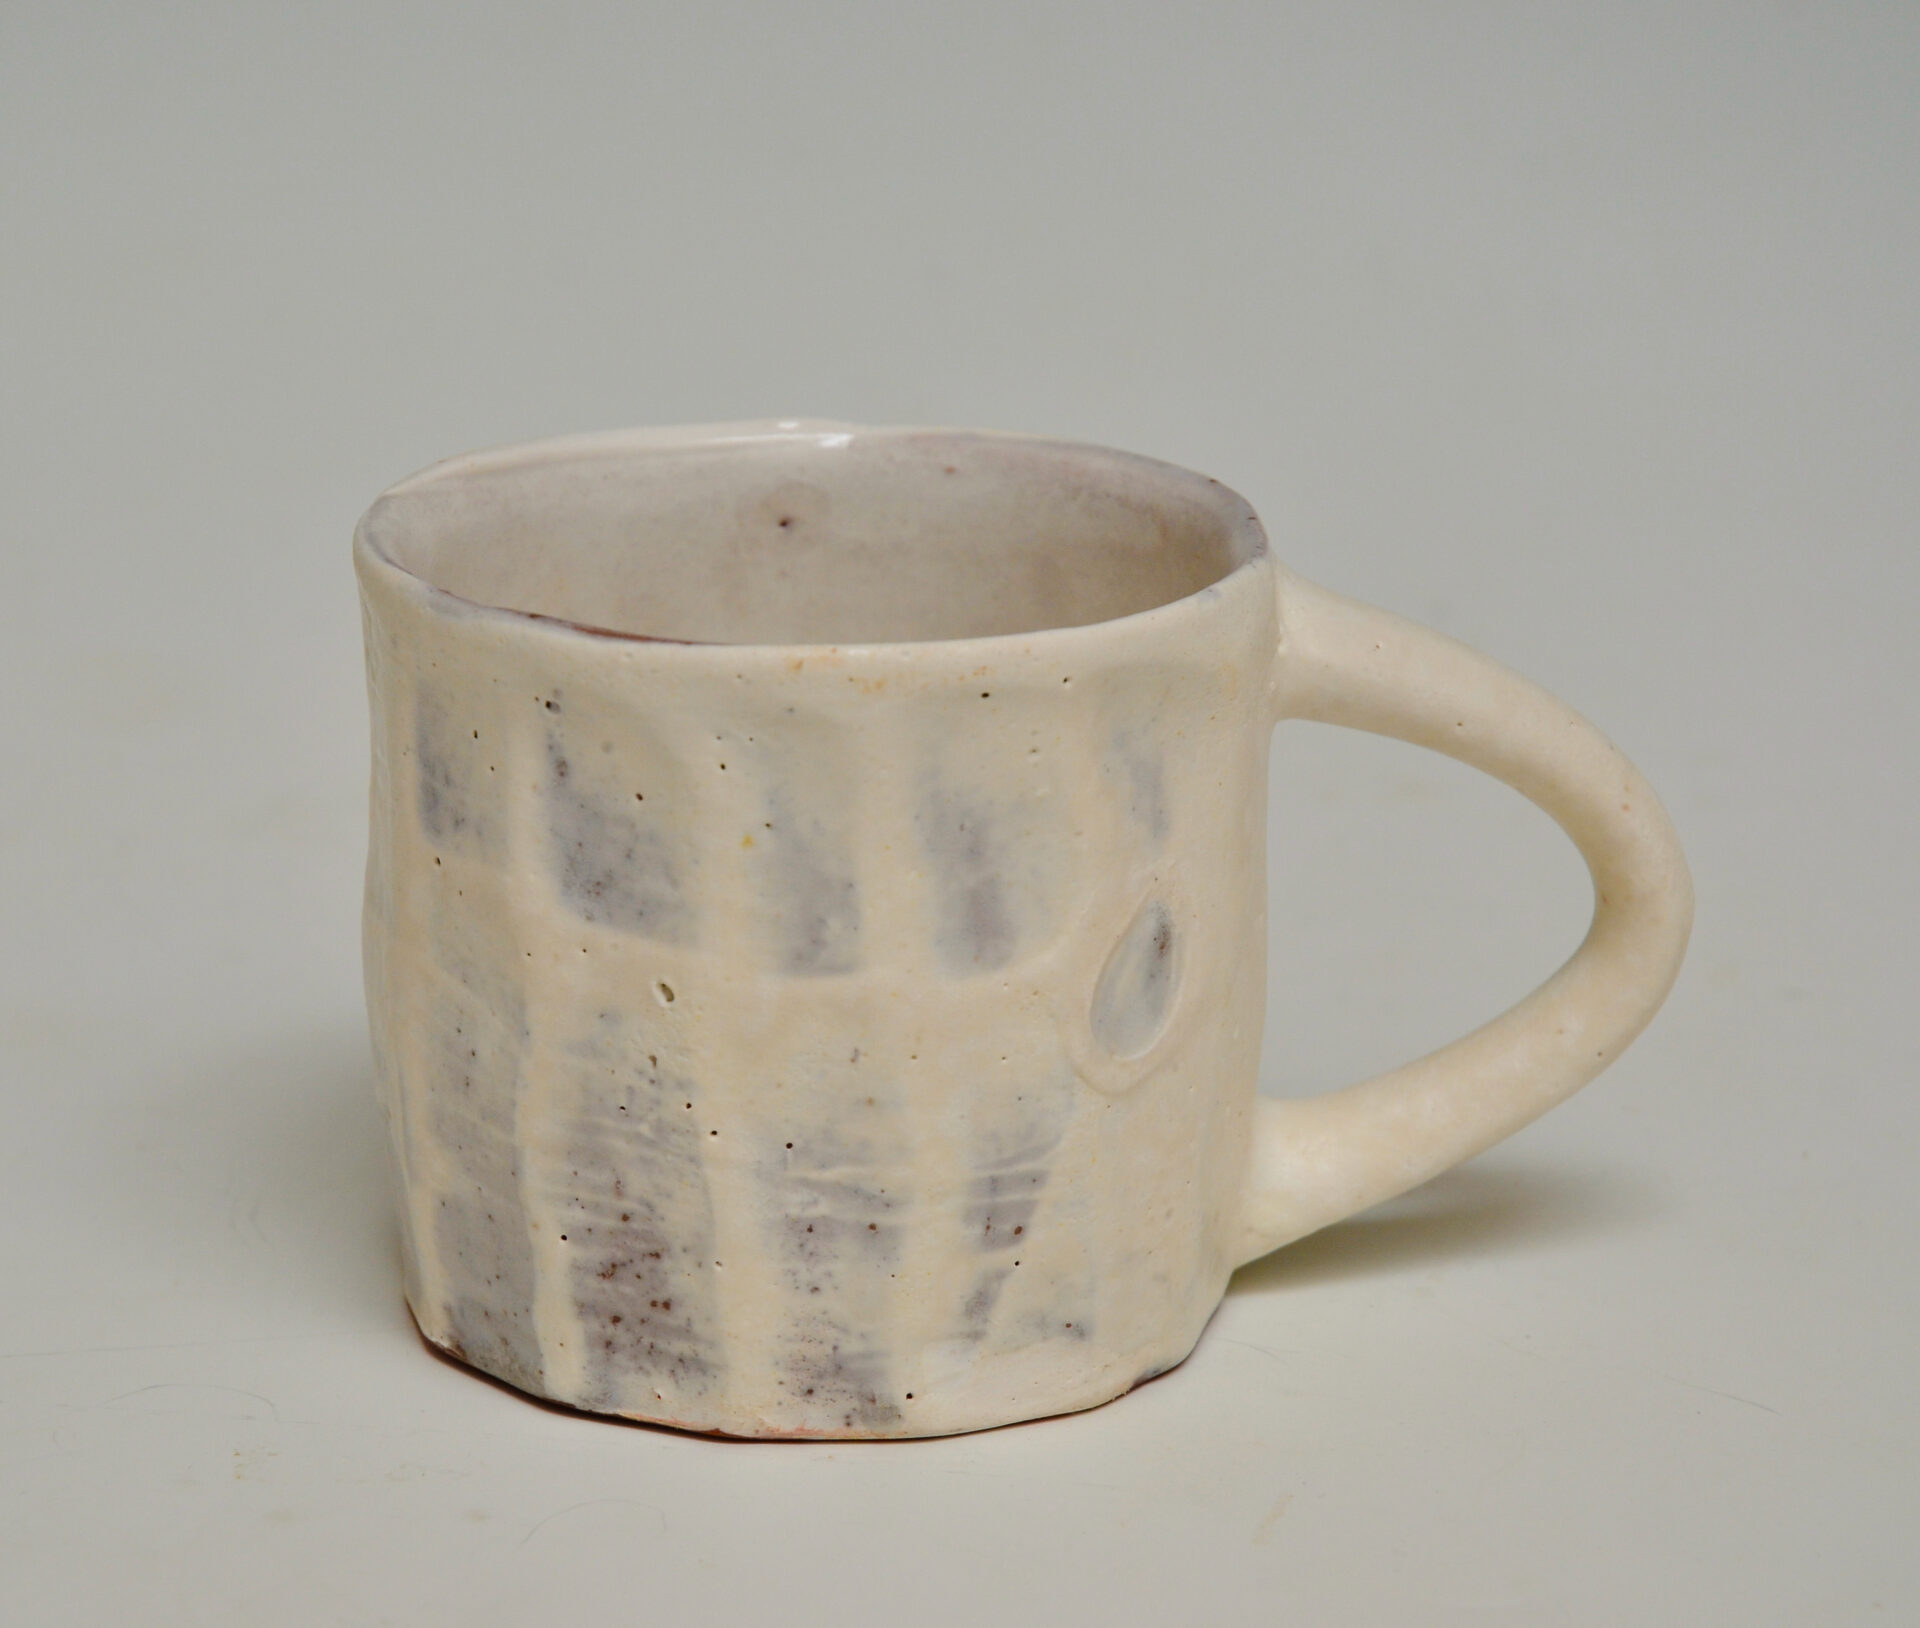 Trend Setters Original (Mum Tea) White Ceramic Mug WMUG1287